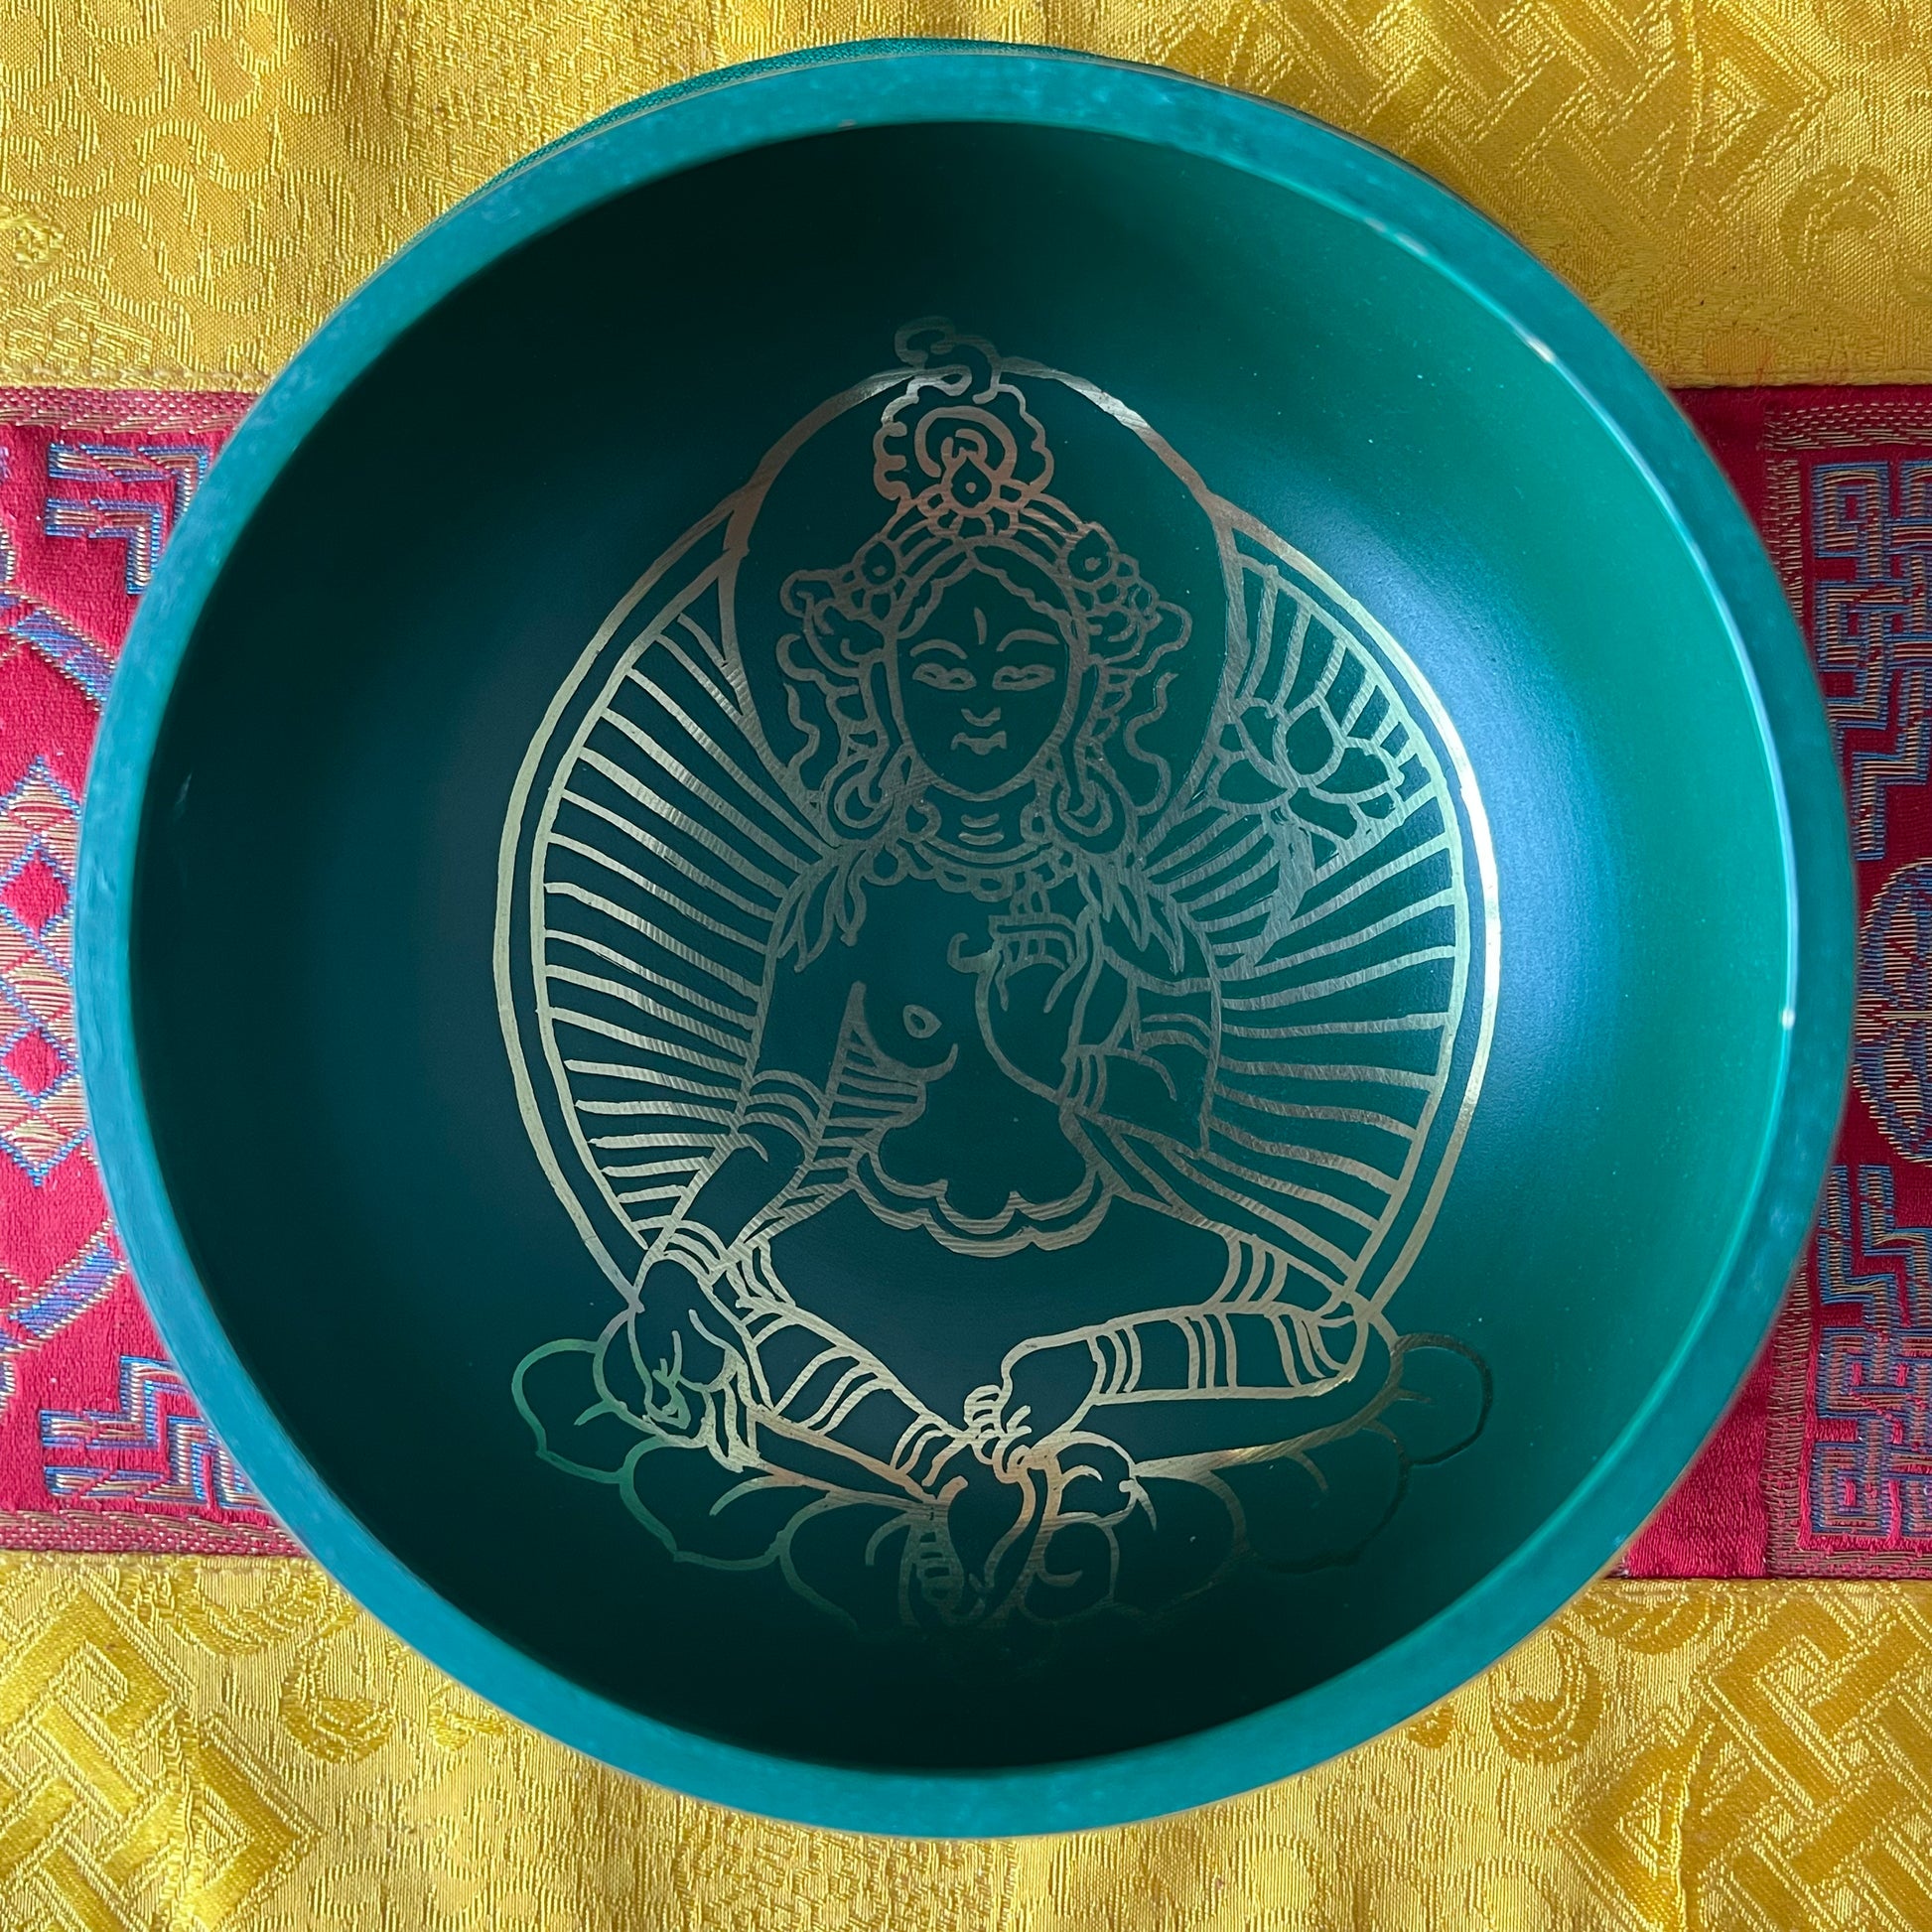 Green Tara Singing Bowl Gift Set | Buddhist Singing Bowl set